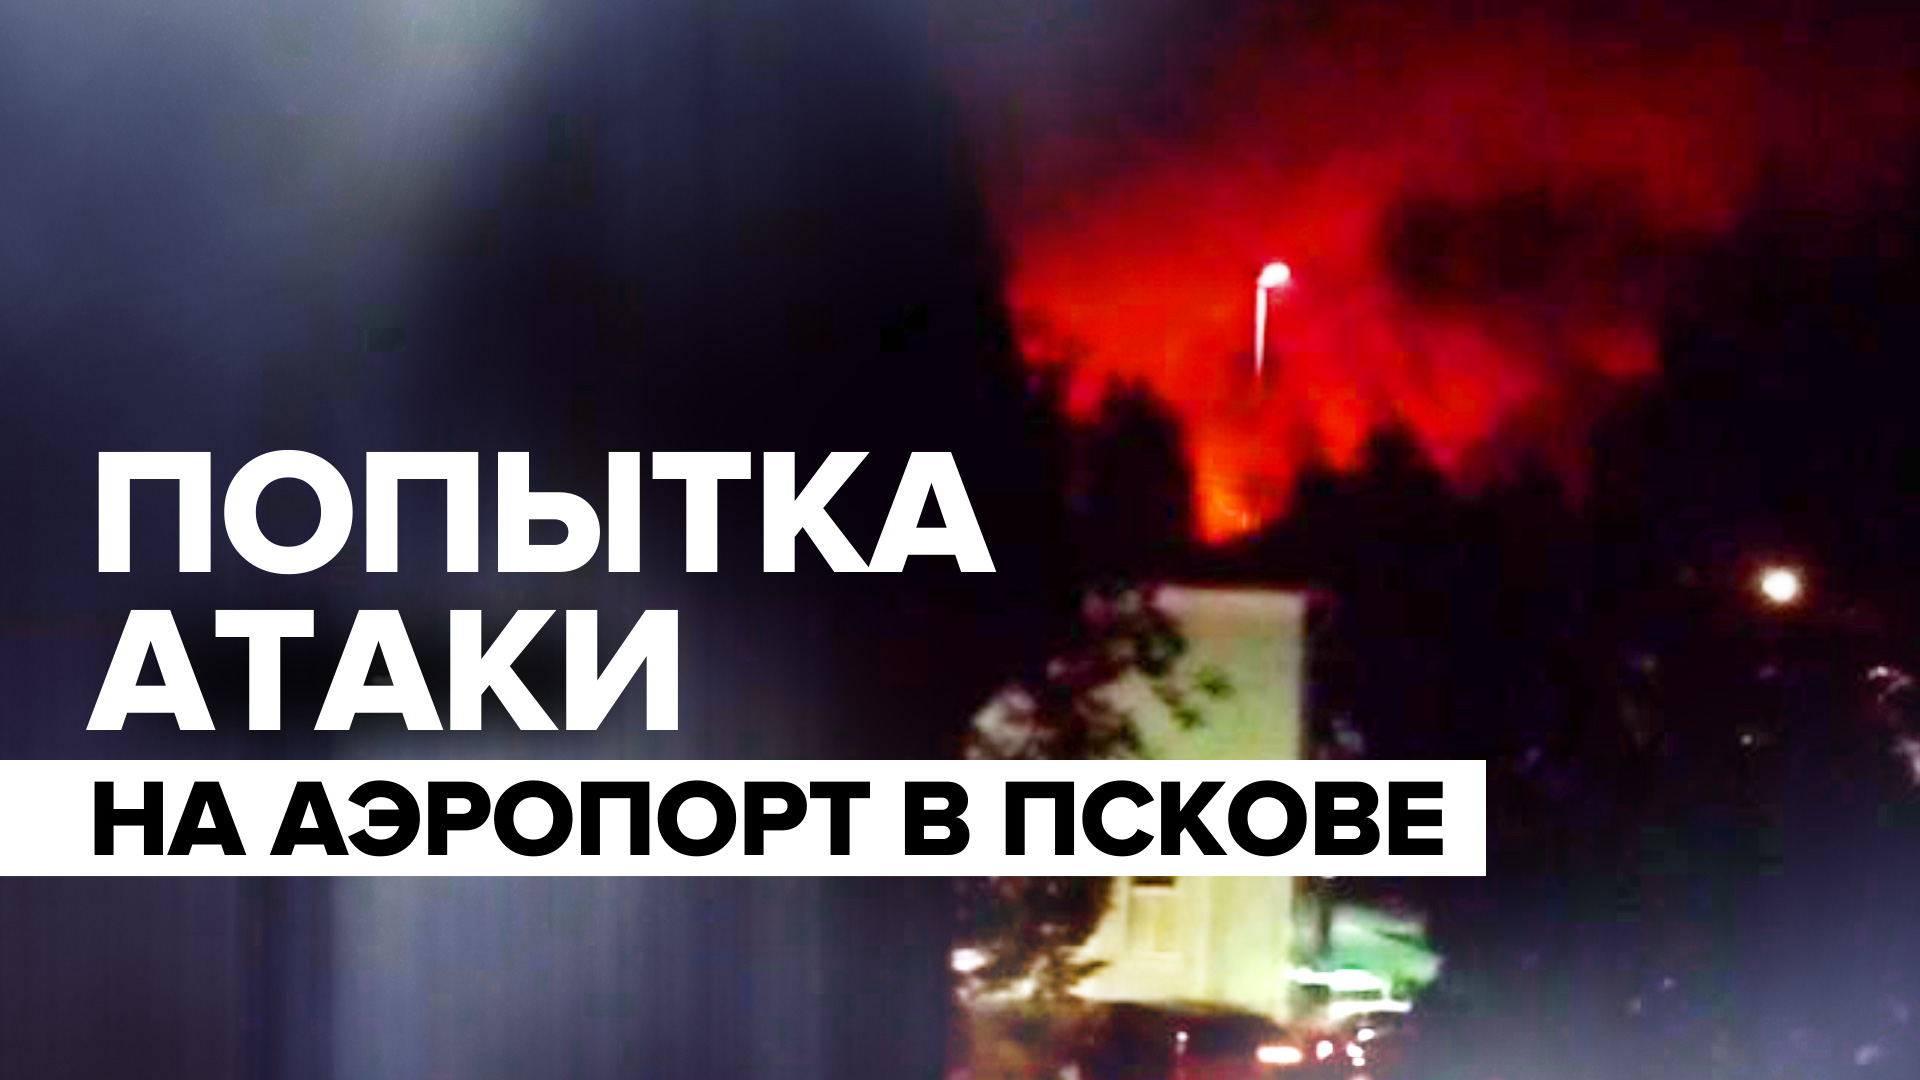 Видео из Пскова, где аэропорт атаковали беспилотники